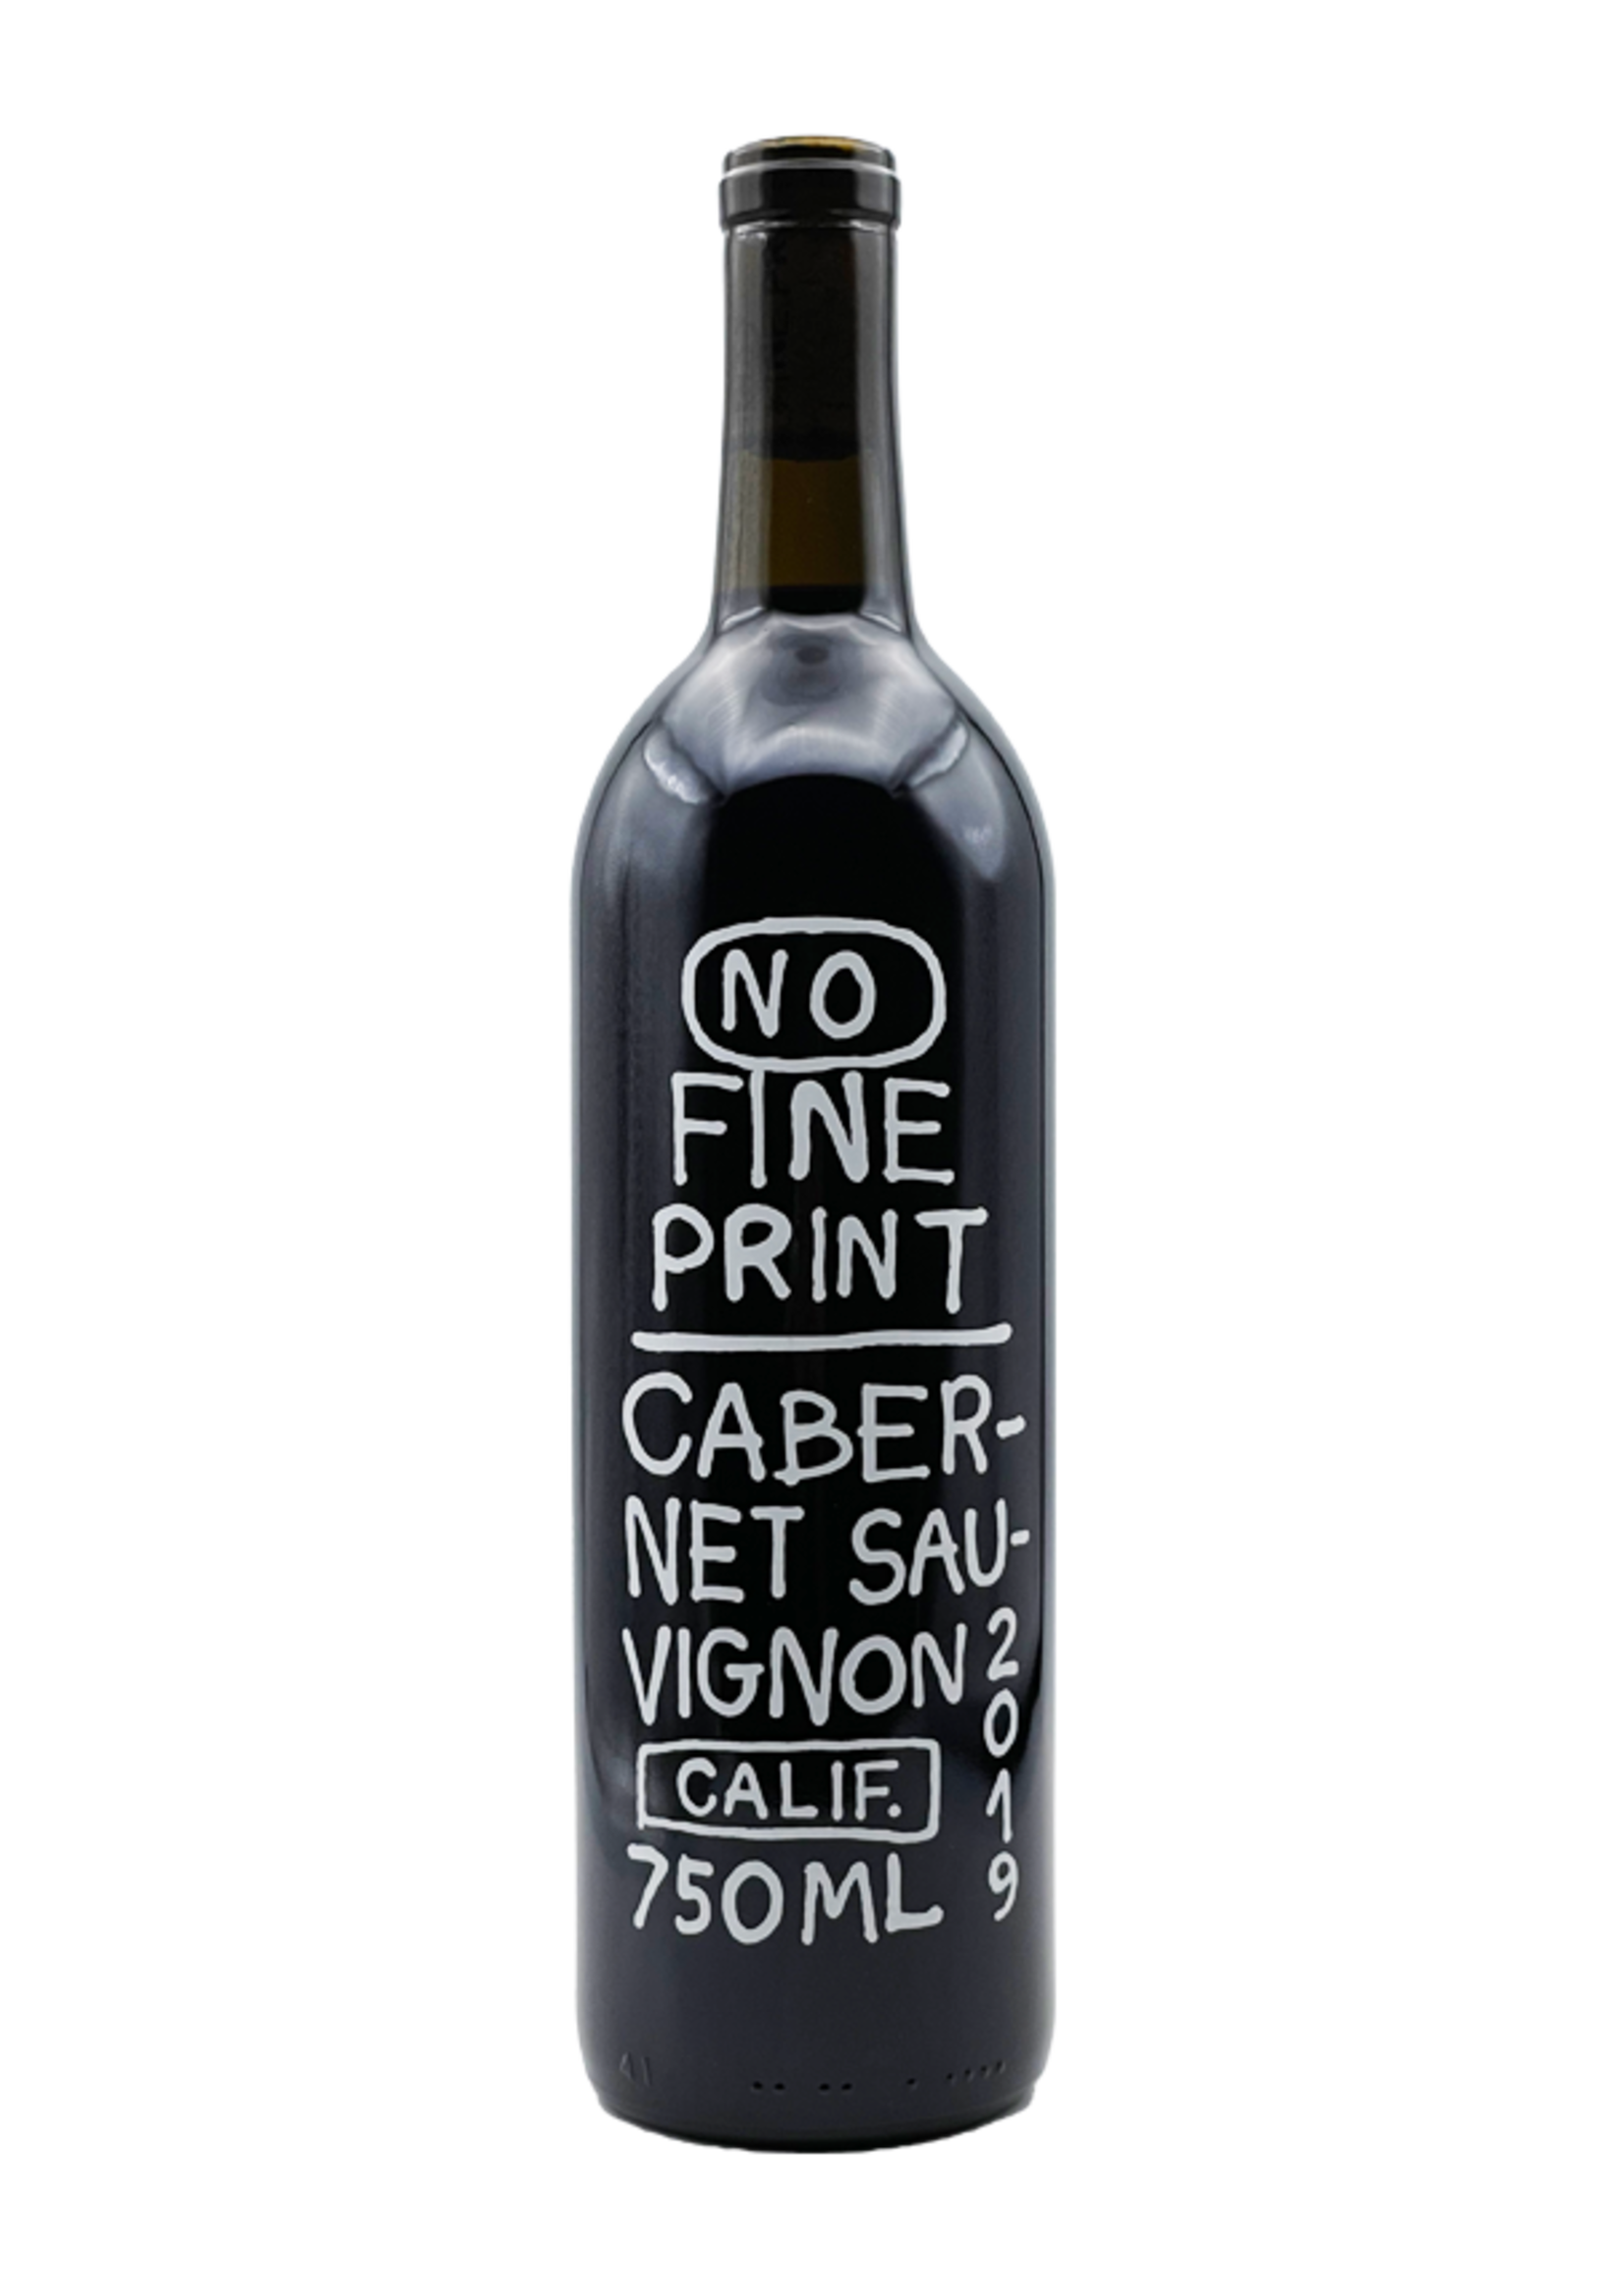 Cabernet Sauvignon 2019 No Fine Print